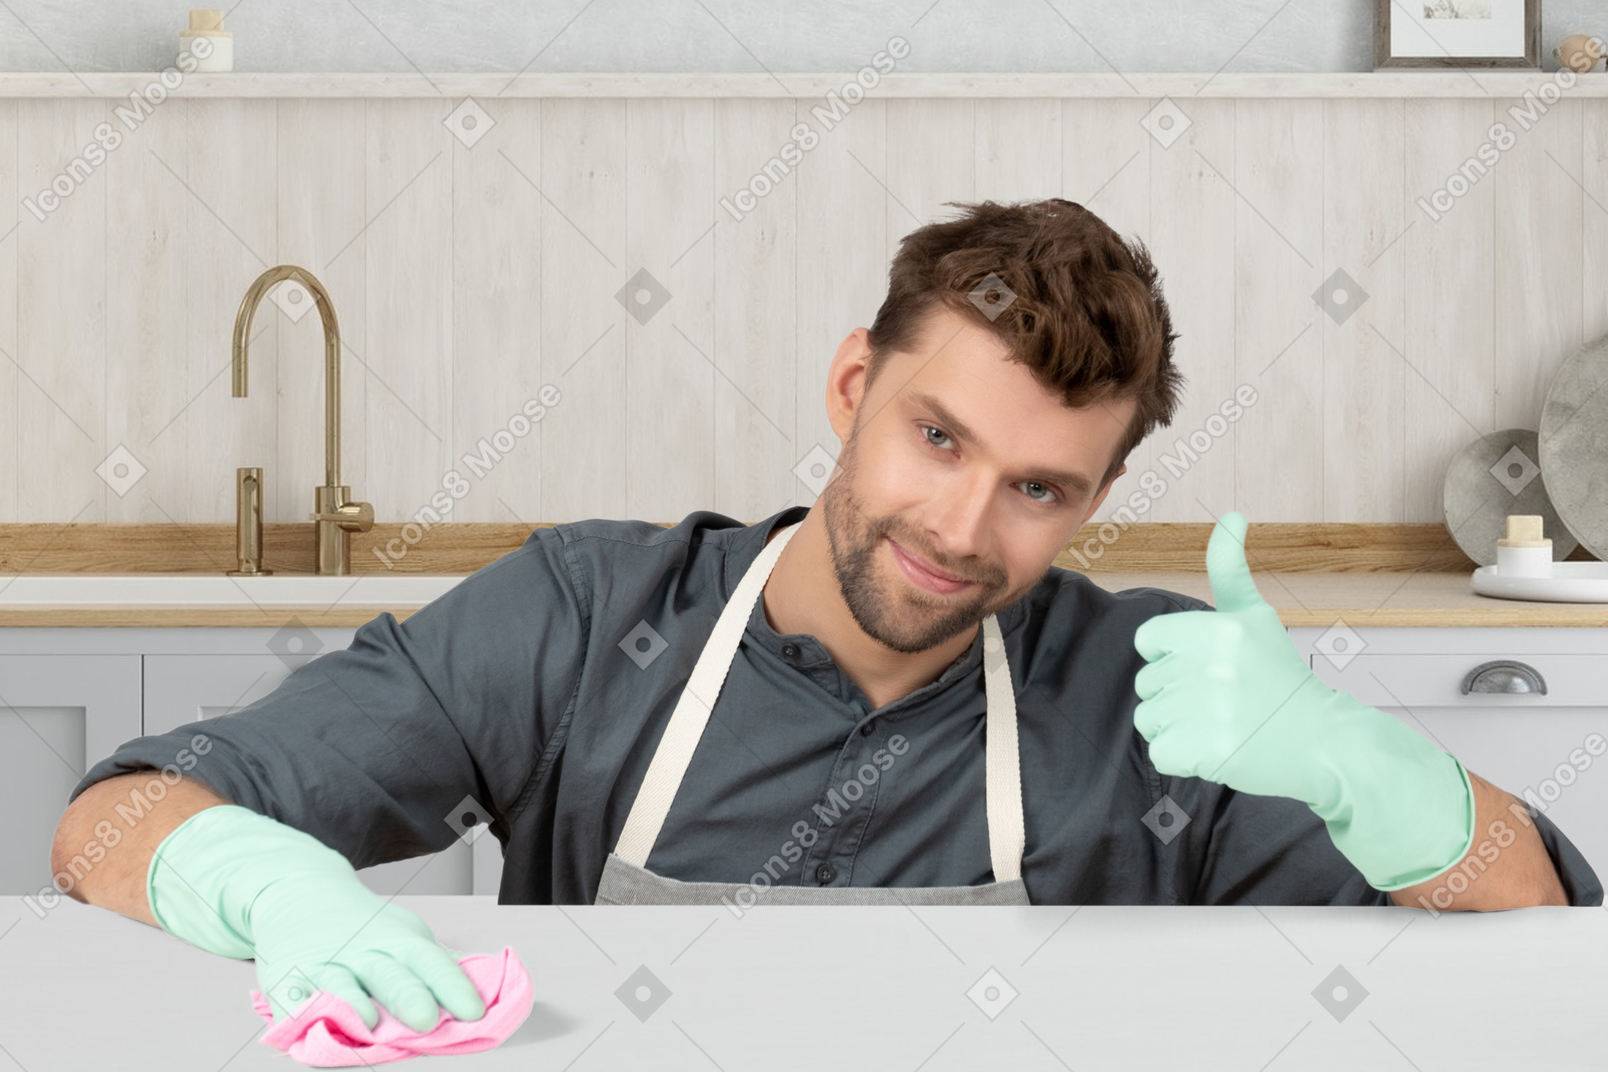 Mann in gummihandschuhen, der die küche putzt